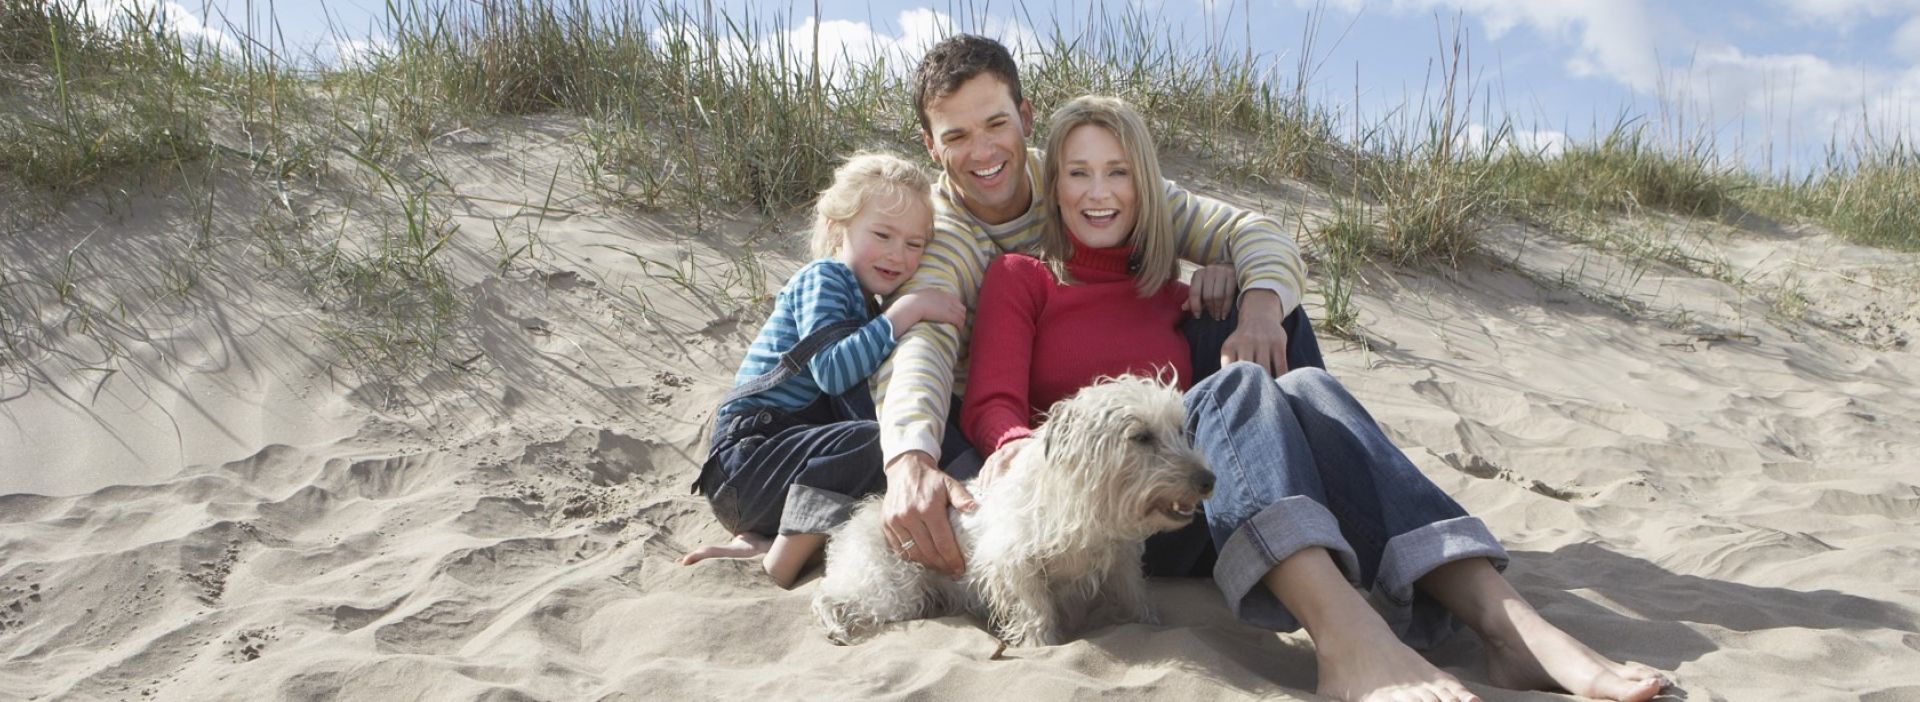 Familie am Strand mit Hund